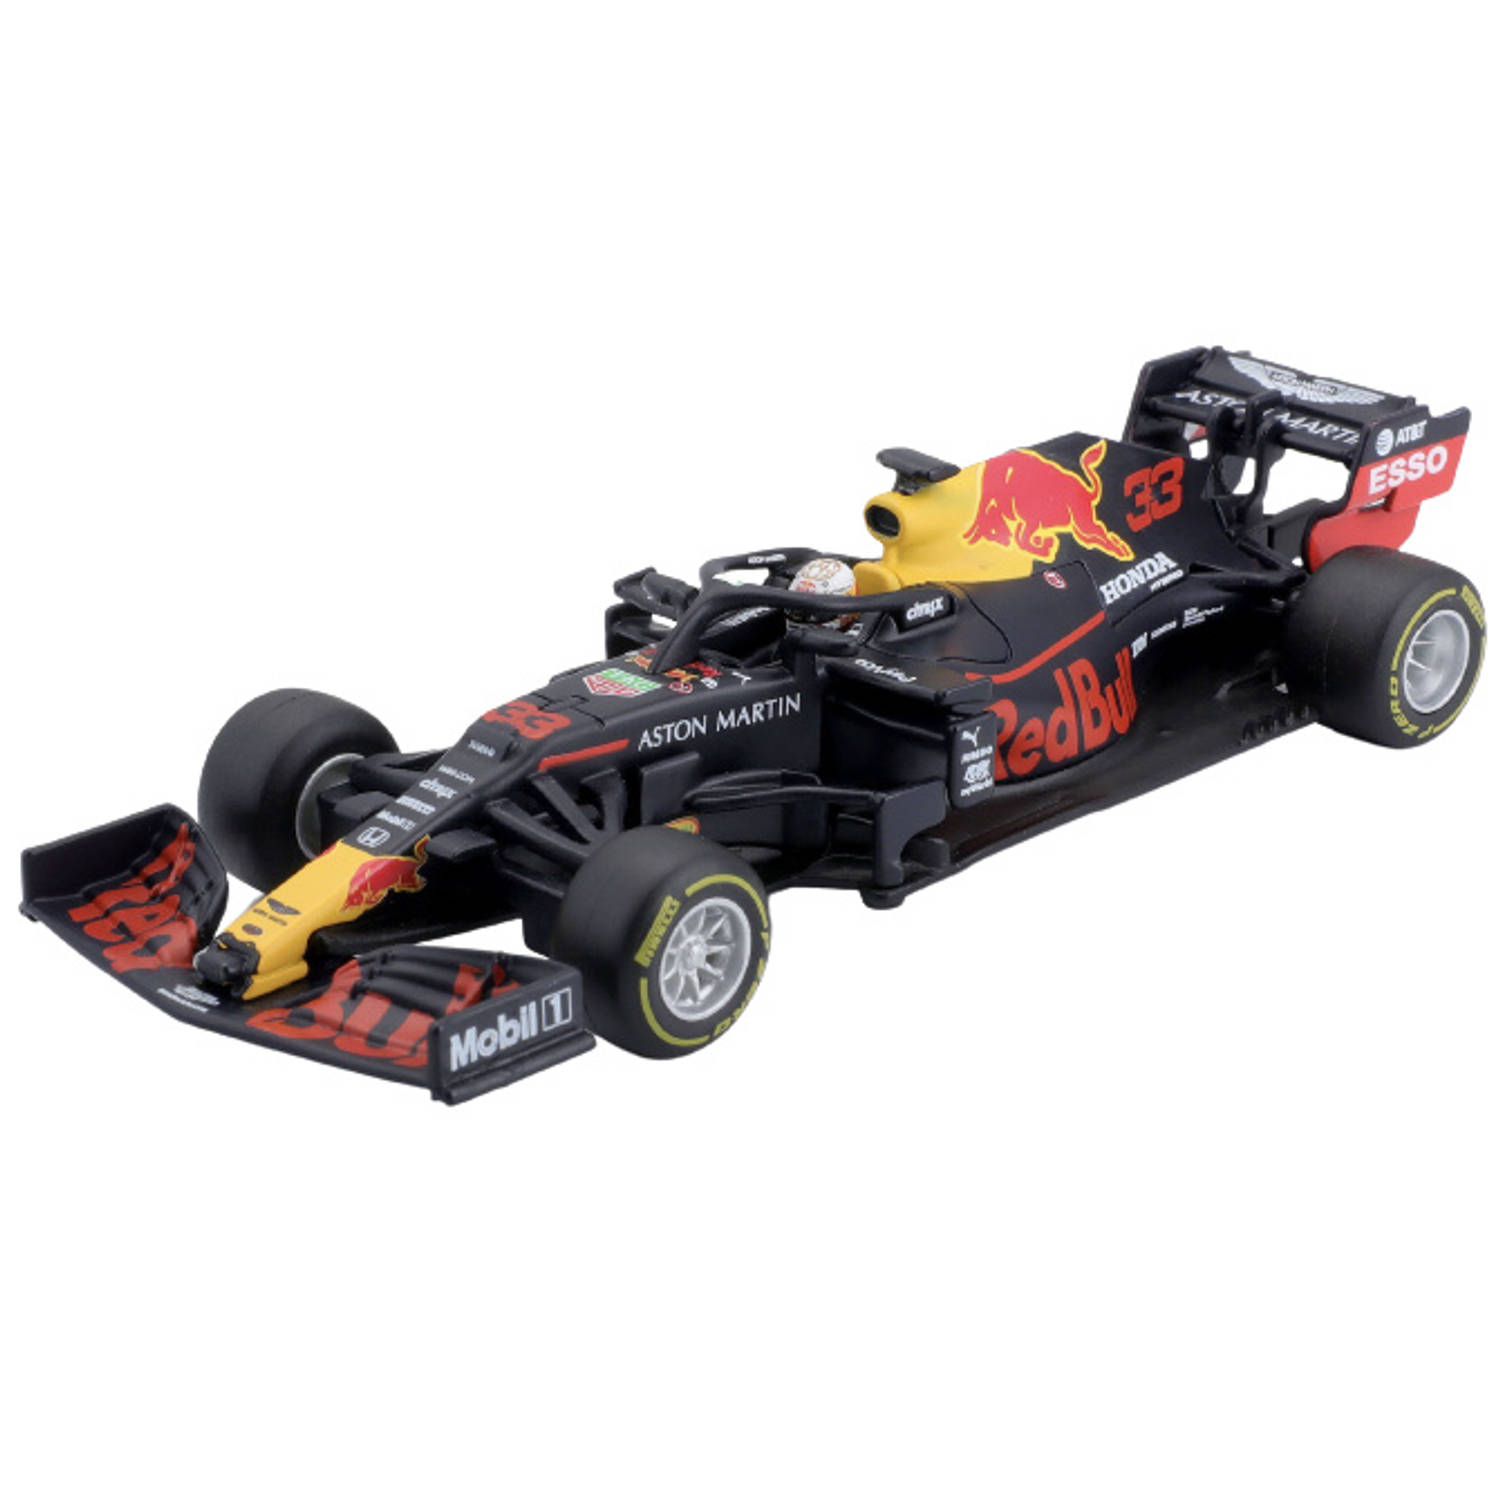 Bburago Red Bull RB16 #33 Max Verstappen modelauto in luxe bewaarcase voorzien van berijder met helm - winnaar Abu Dhabi 2020 - schaal 1:43